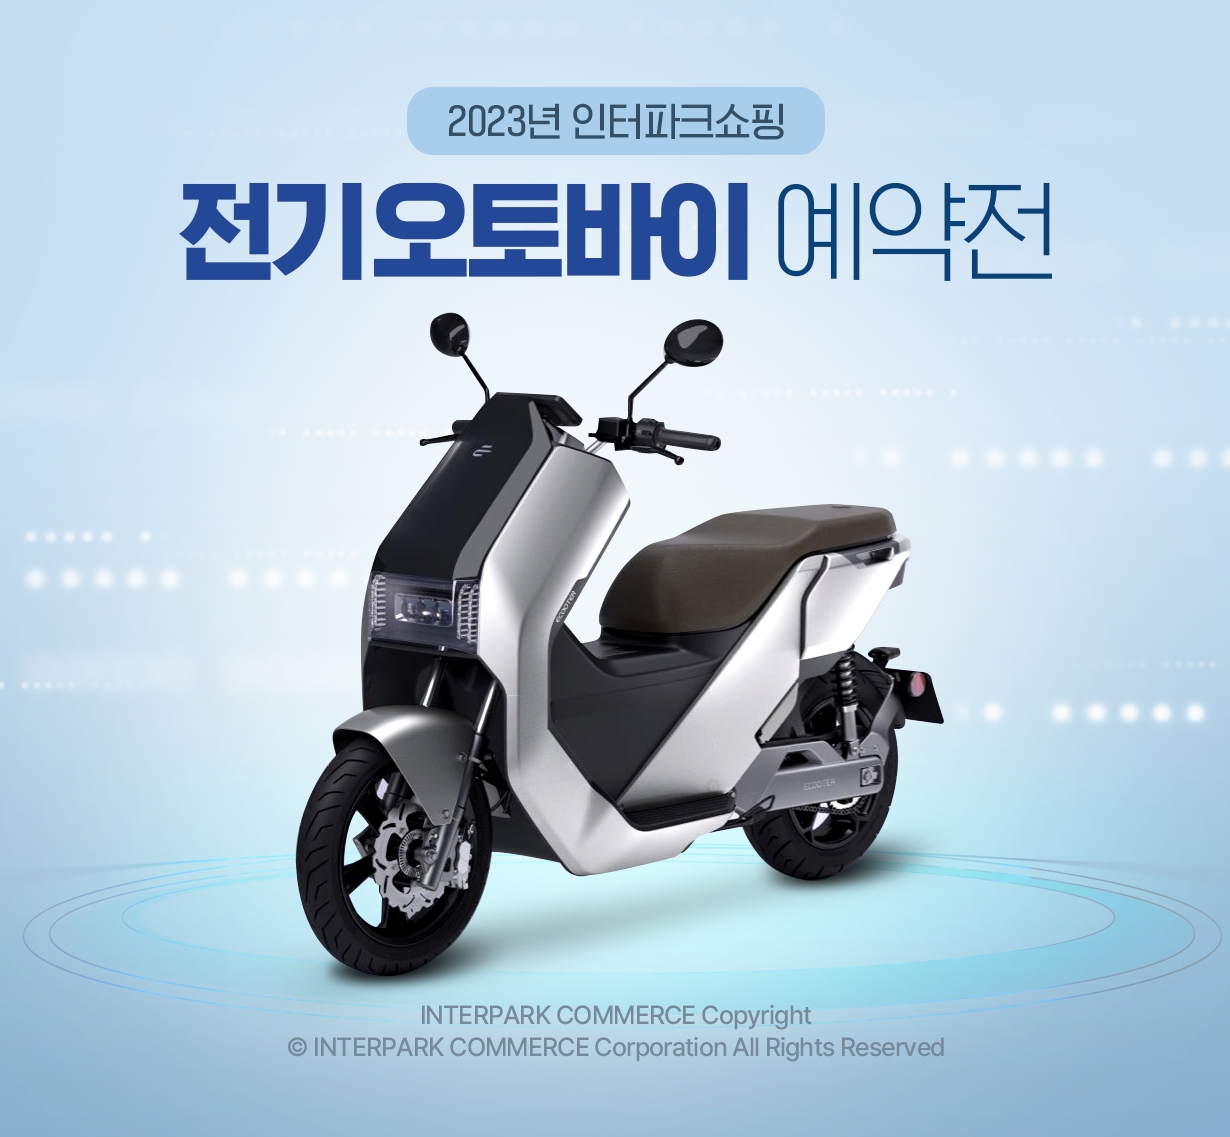 [생활경제 이슈] 인터파크쇼핑, 2023 전기 오토바이 예약 판매 진행 外